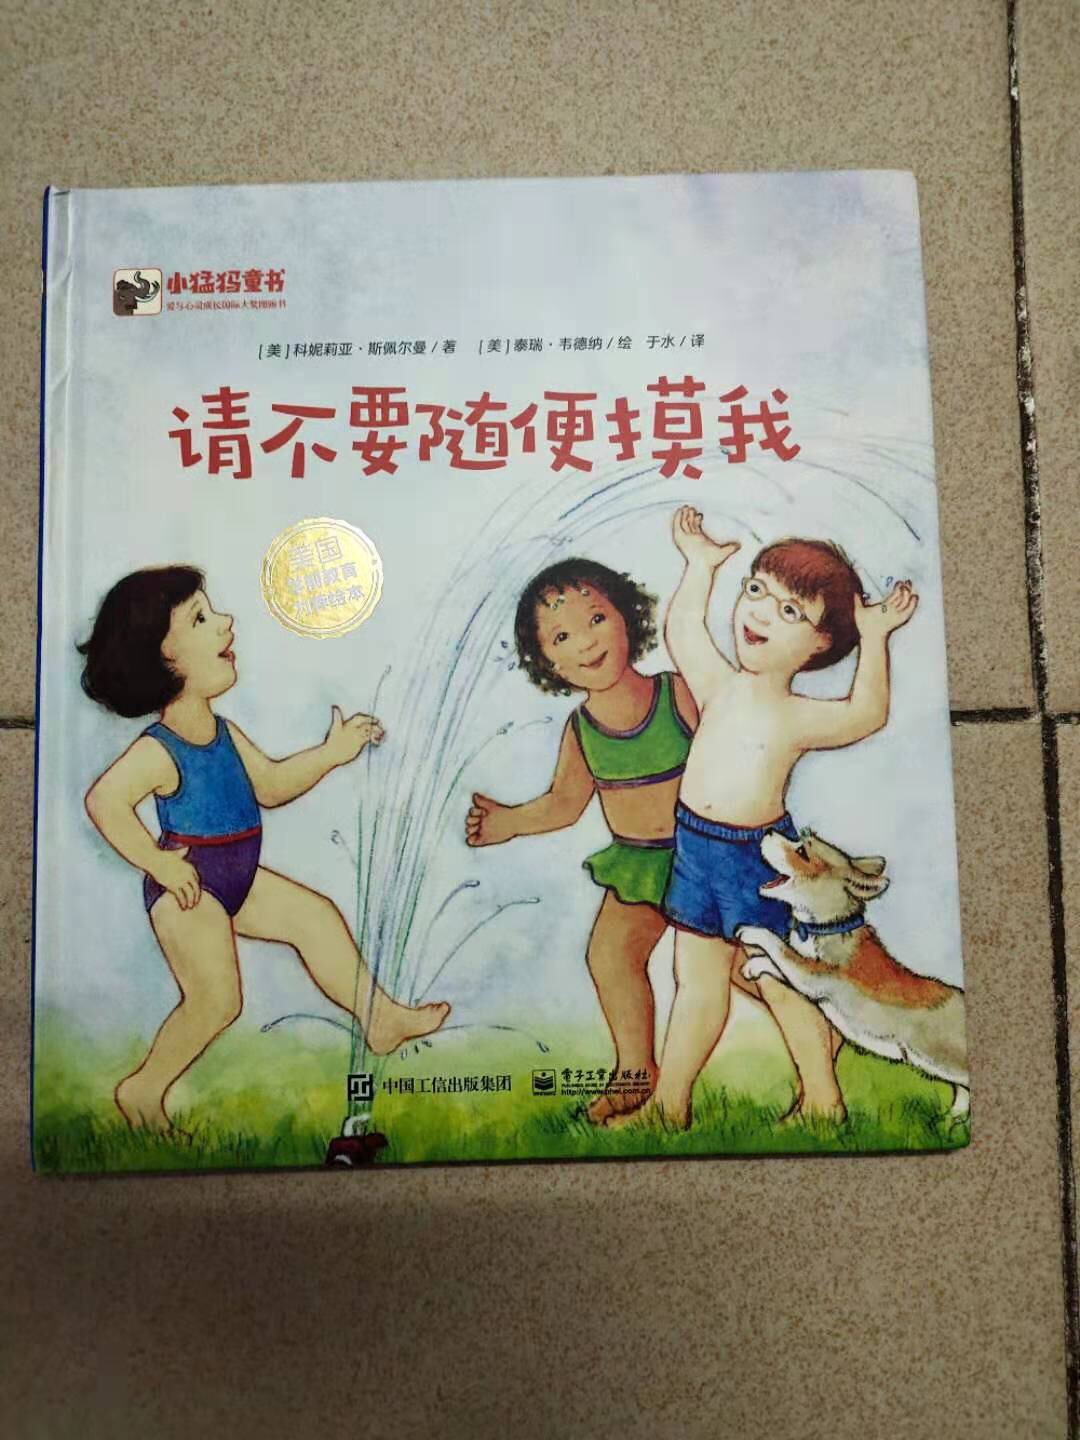 这本书比较贵，页面不是很多。内容可能是翻译过来的描述，翻译得比较生硬。图画描述和文字描述不是很相符。感觉不太适合中国小孩。